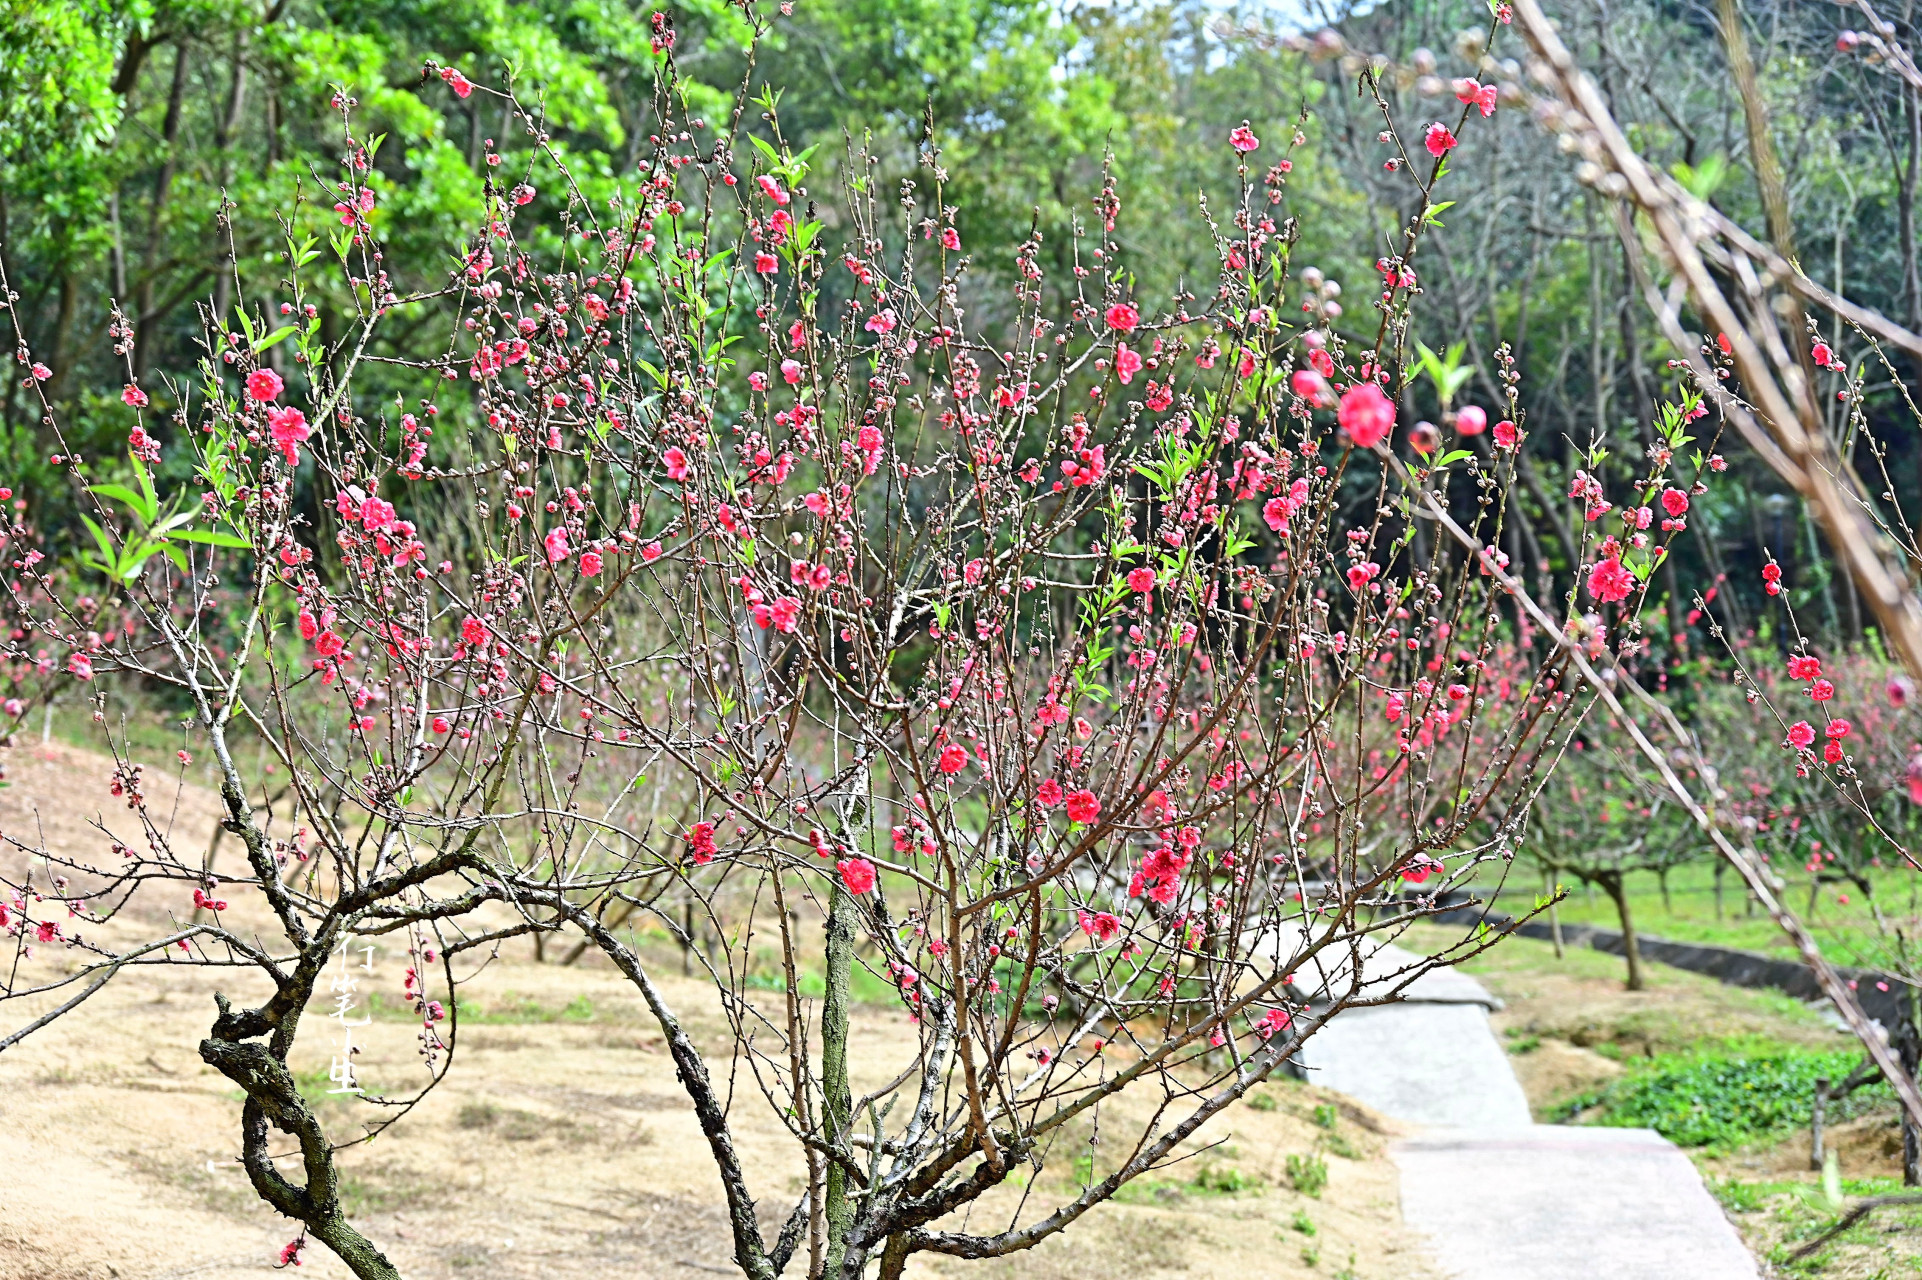 初春二月,一起来中山市树木园欣赏桃花吧!